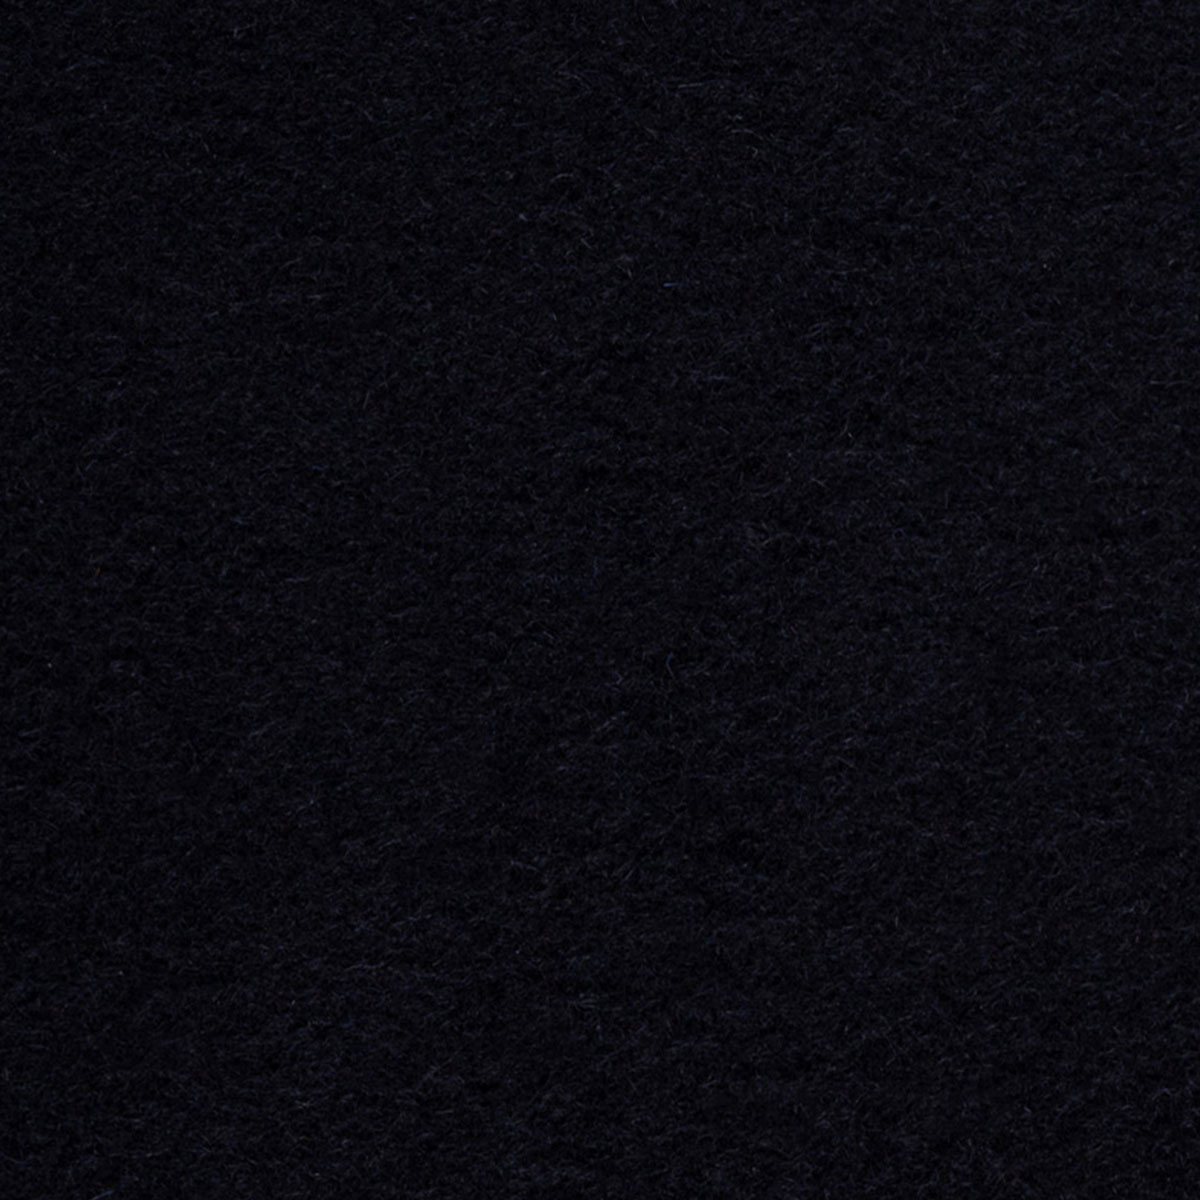 Oberstoff in dunkelblau aus Wolle und Polyester